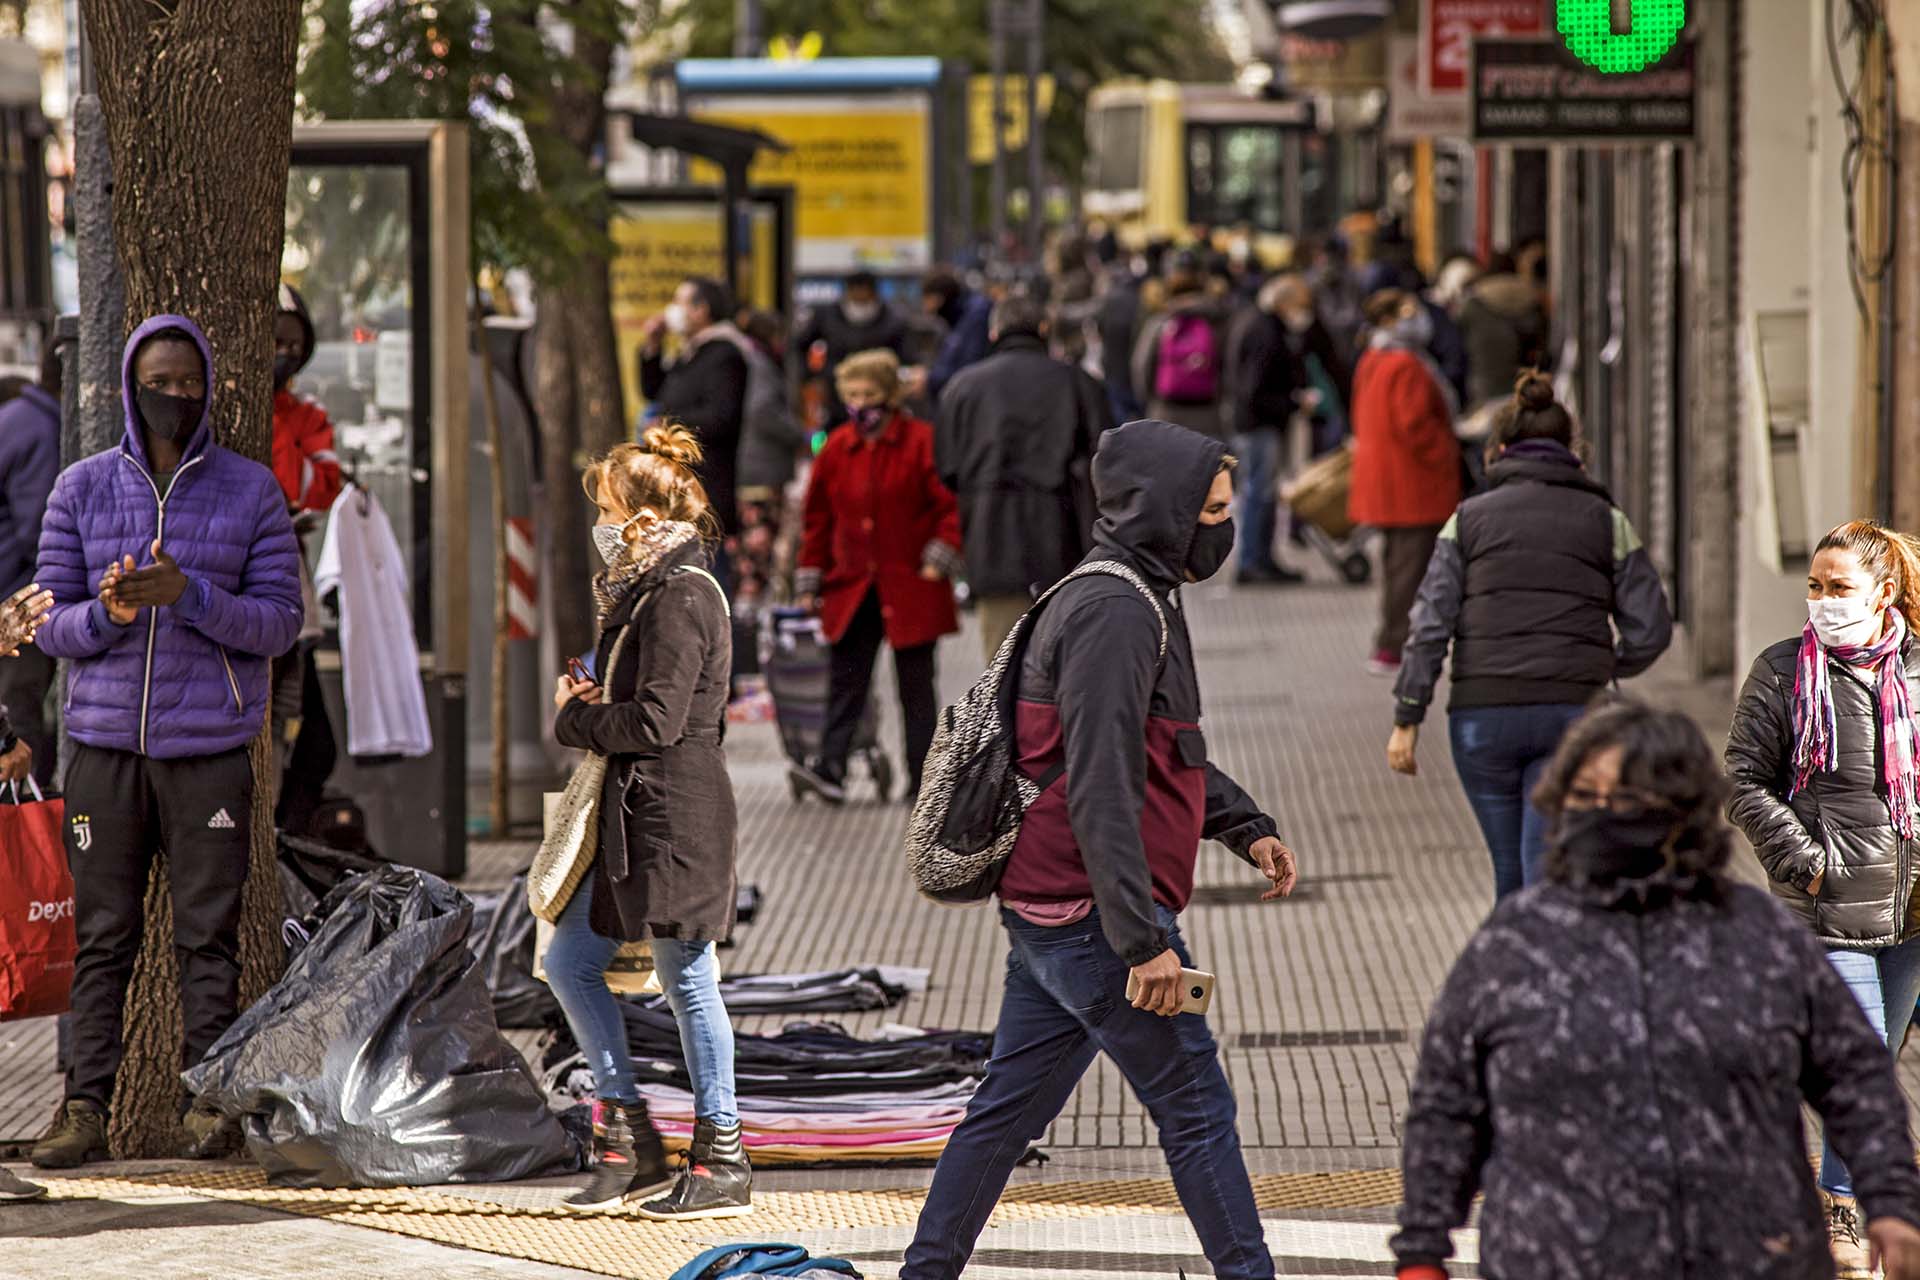 El relajamiento de actividades y en consecuencia la mayor circulación de personas en la calle hacen que el número de casos y fallecidos venga aumentando progresivamente (Shutterstock/EFE)